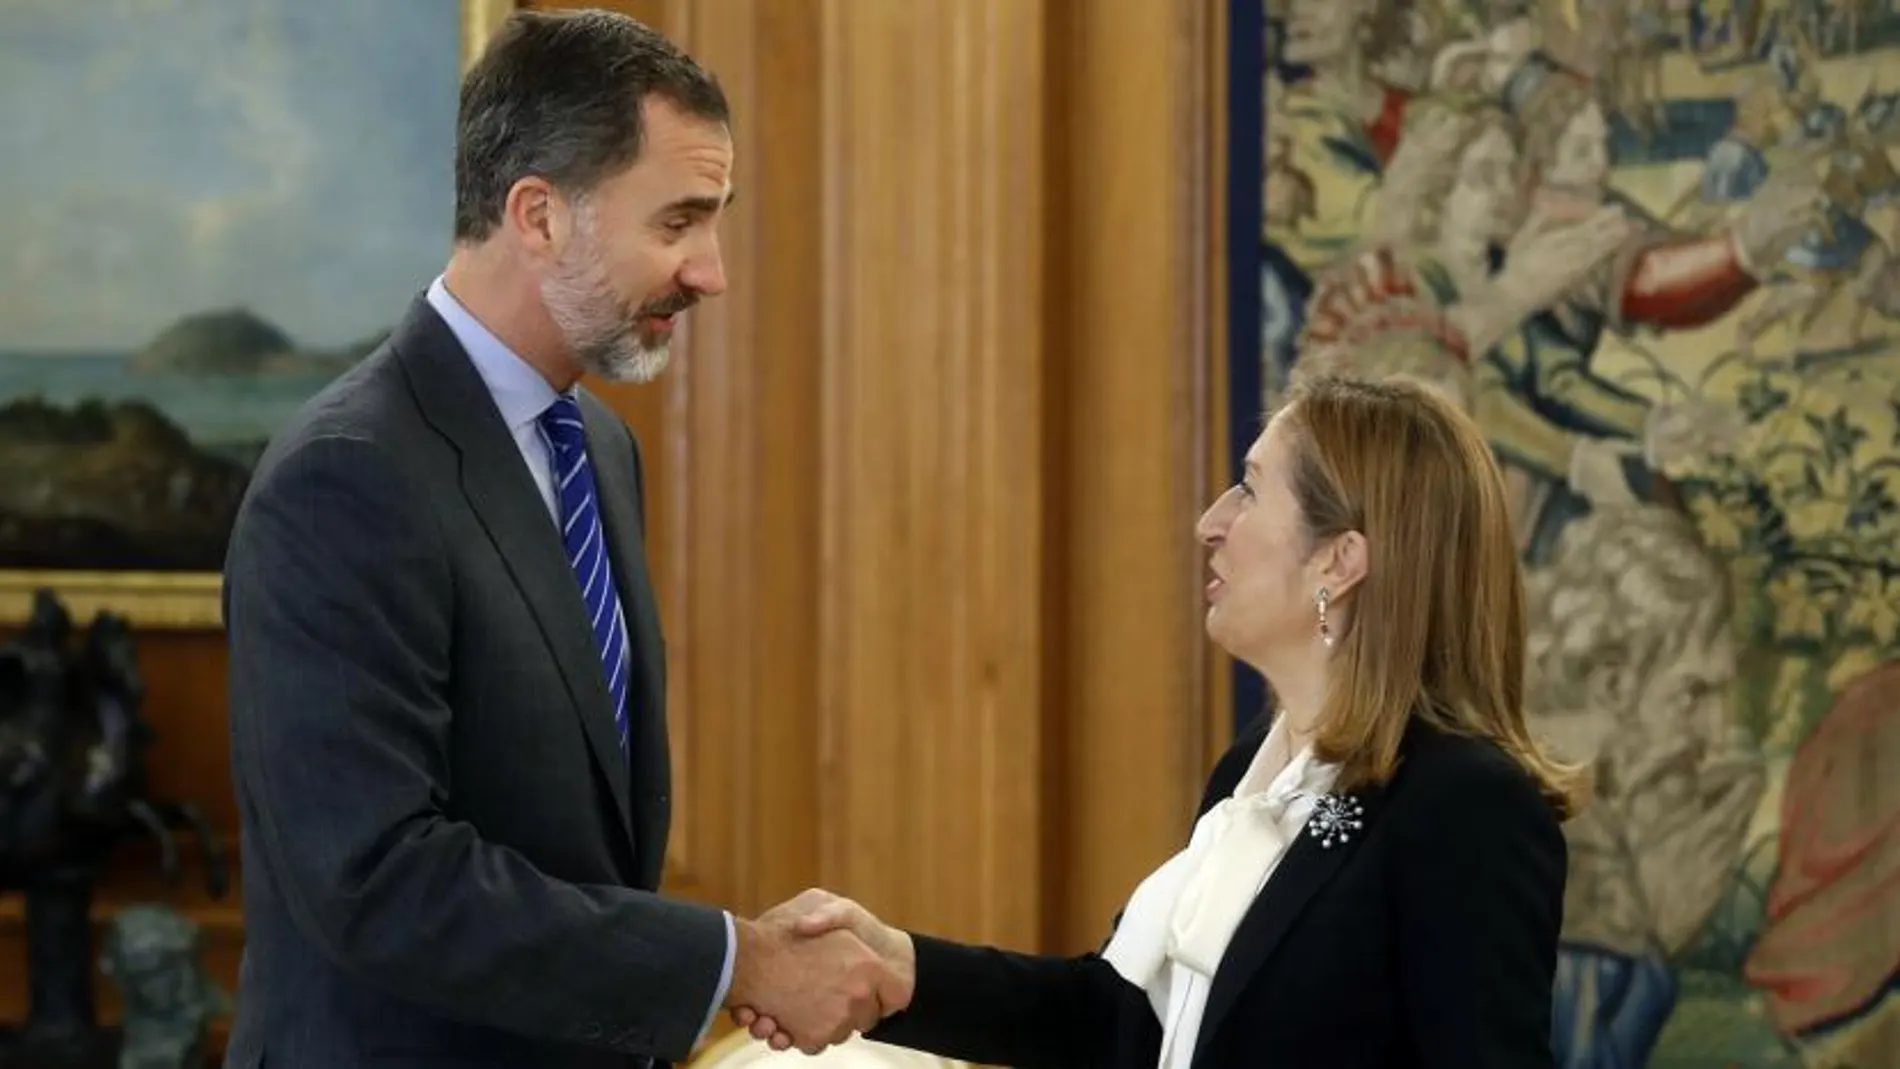 El rey Felipe VI recibe en audiencia a la presidenta del Congreso de los Diputados, Ana Pastor, quien le comunicará oficialmente la investidura de Mariano Rajoy, esta mañana en el Palacio de la Zarzuela.